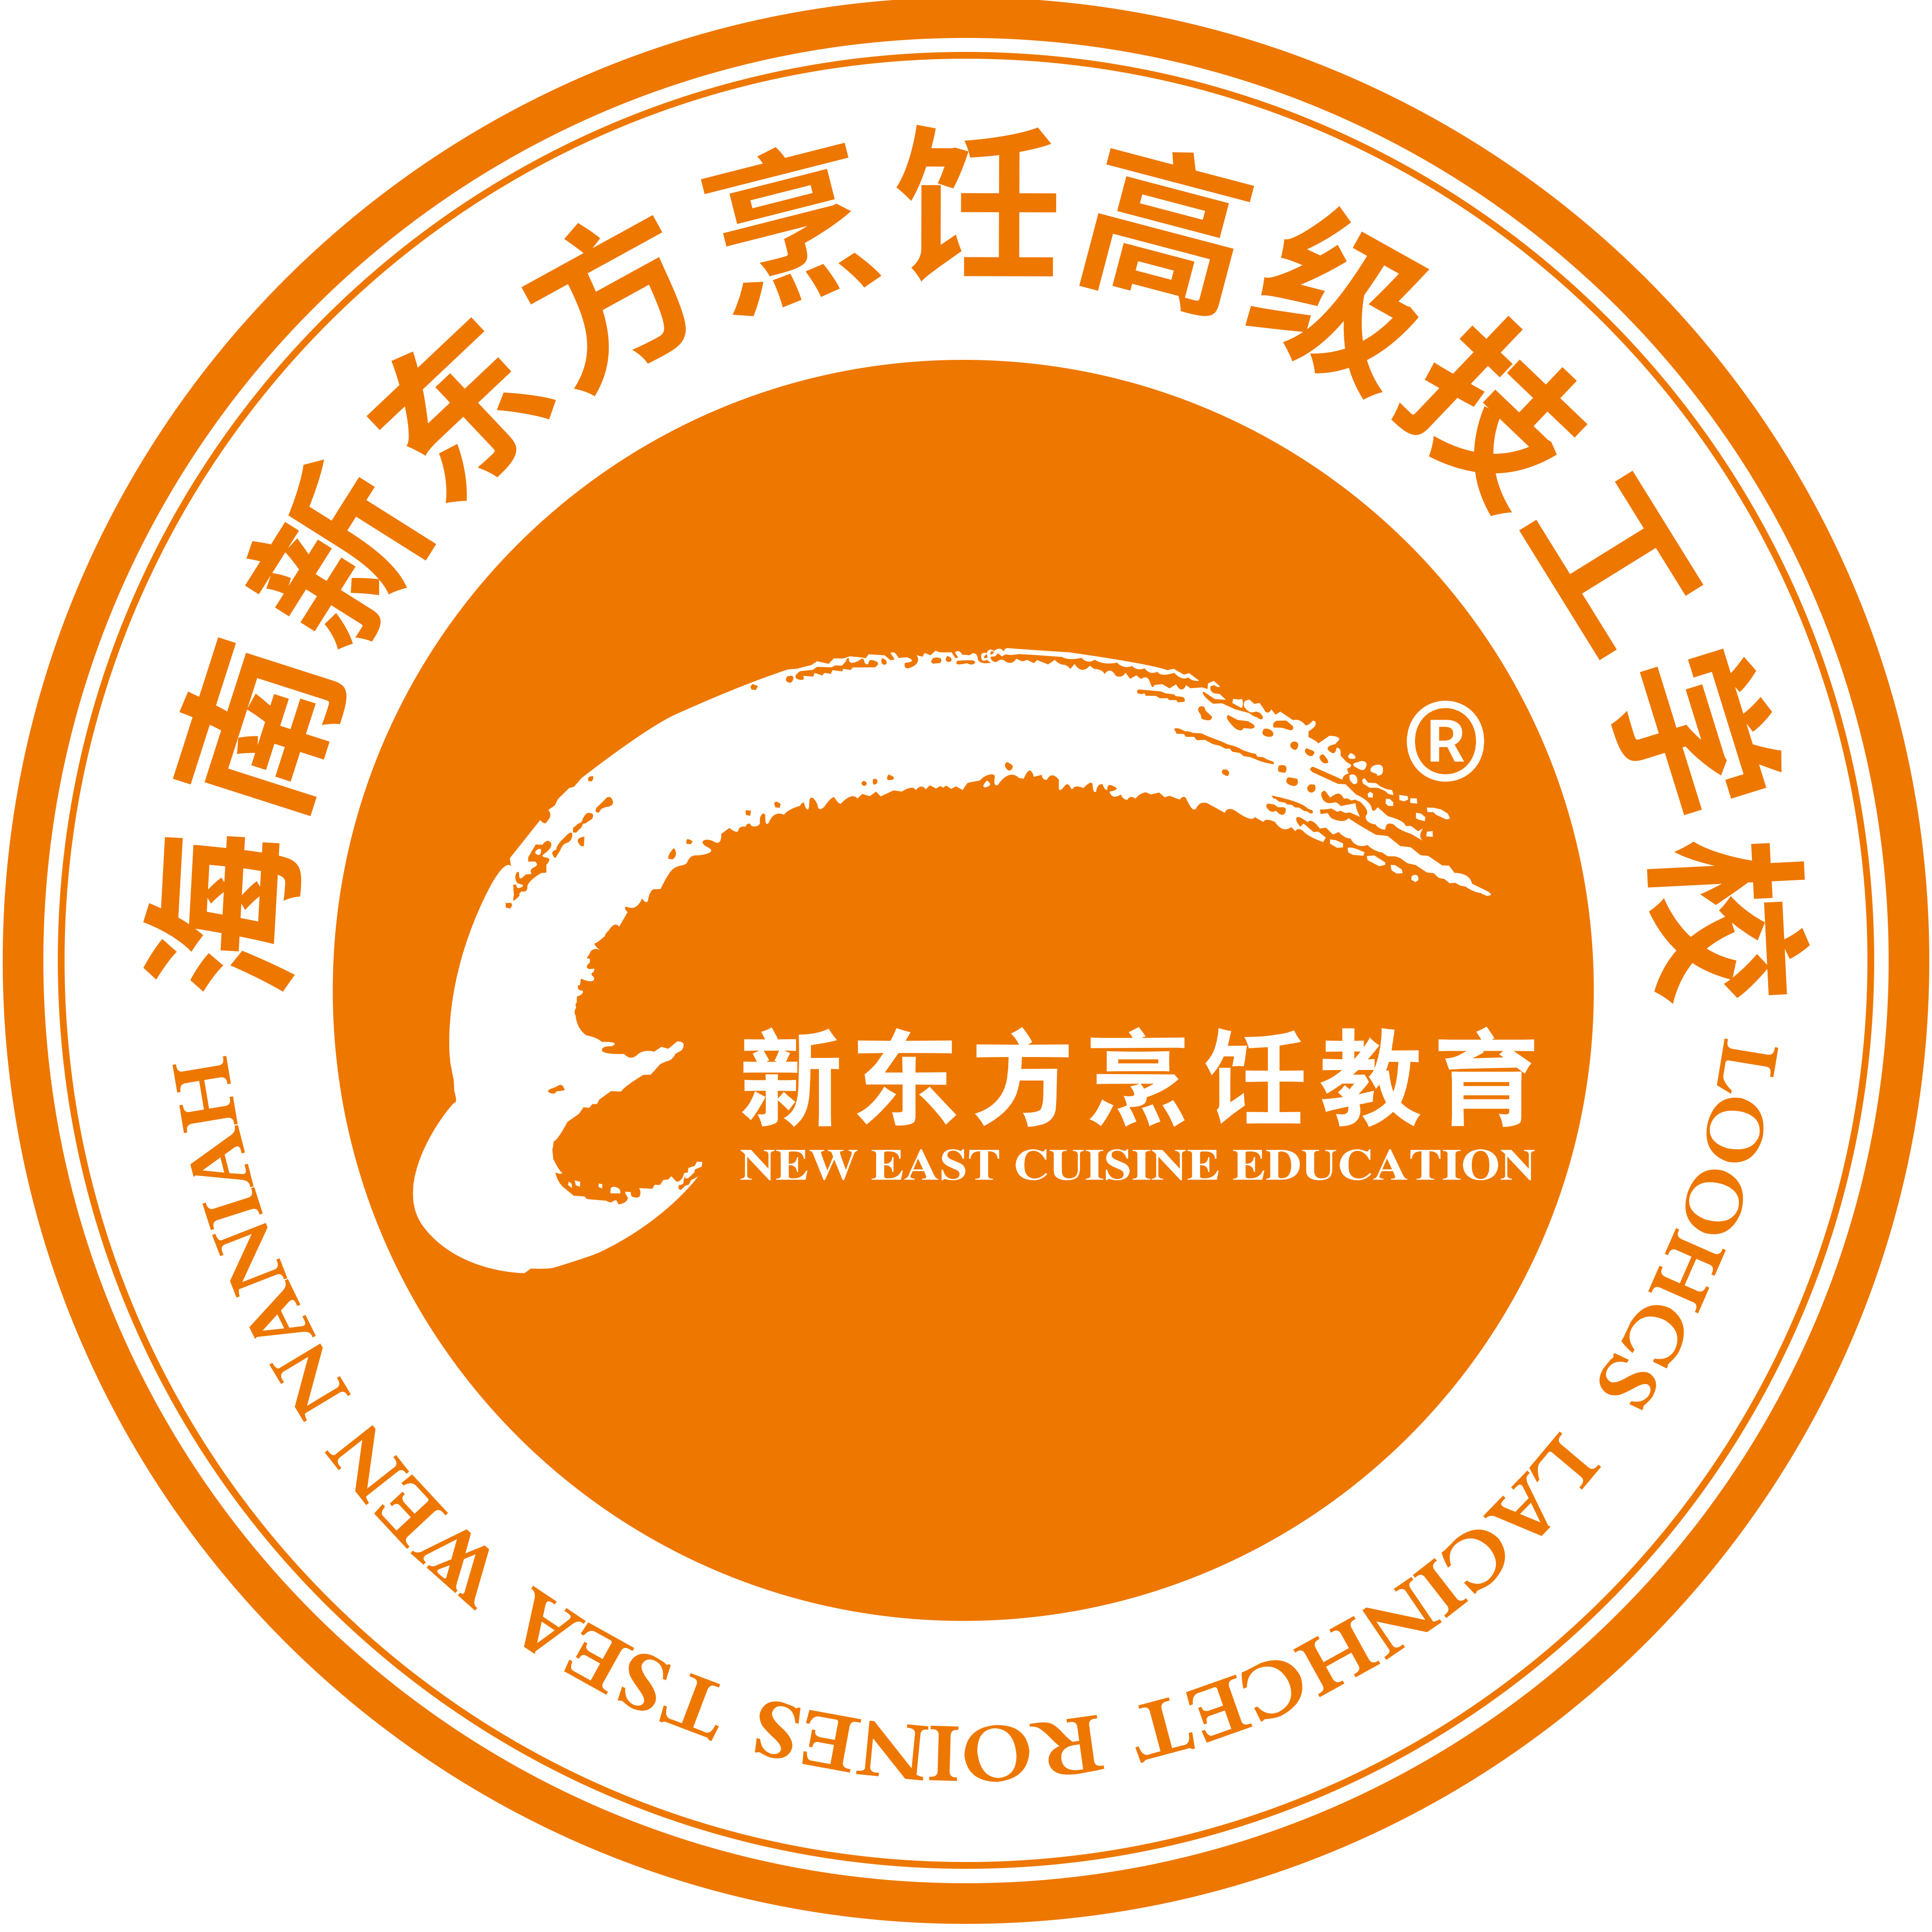 海南新東方烹飪高級技工學校